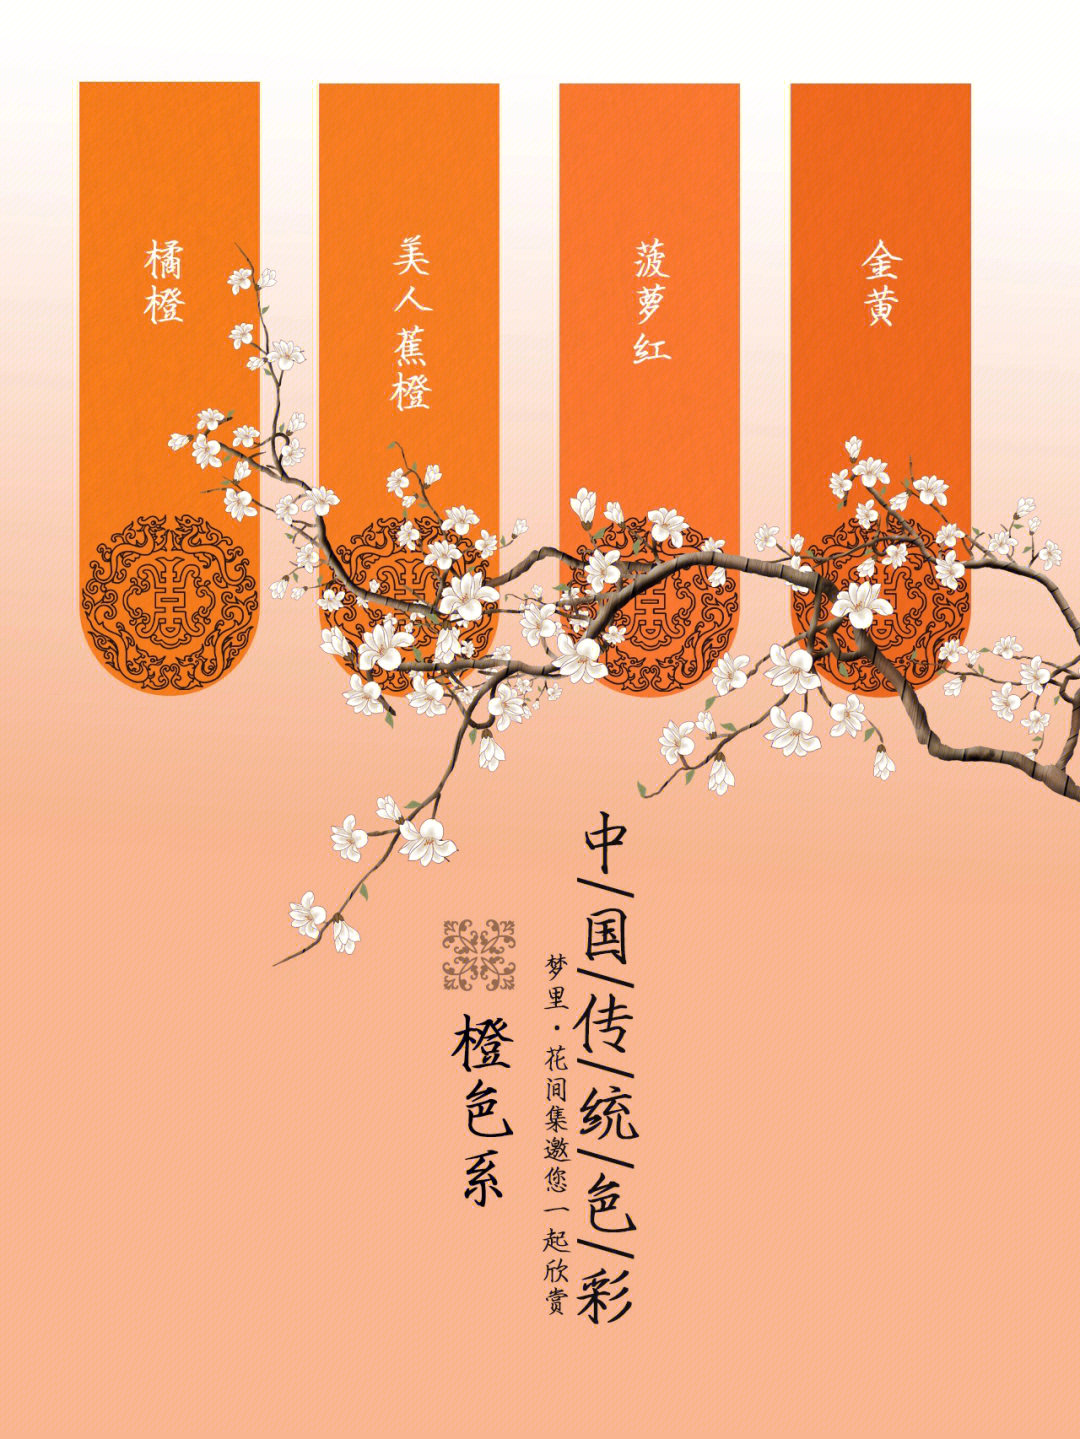 中国传统色彩橙色系一